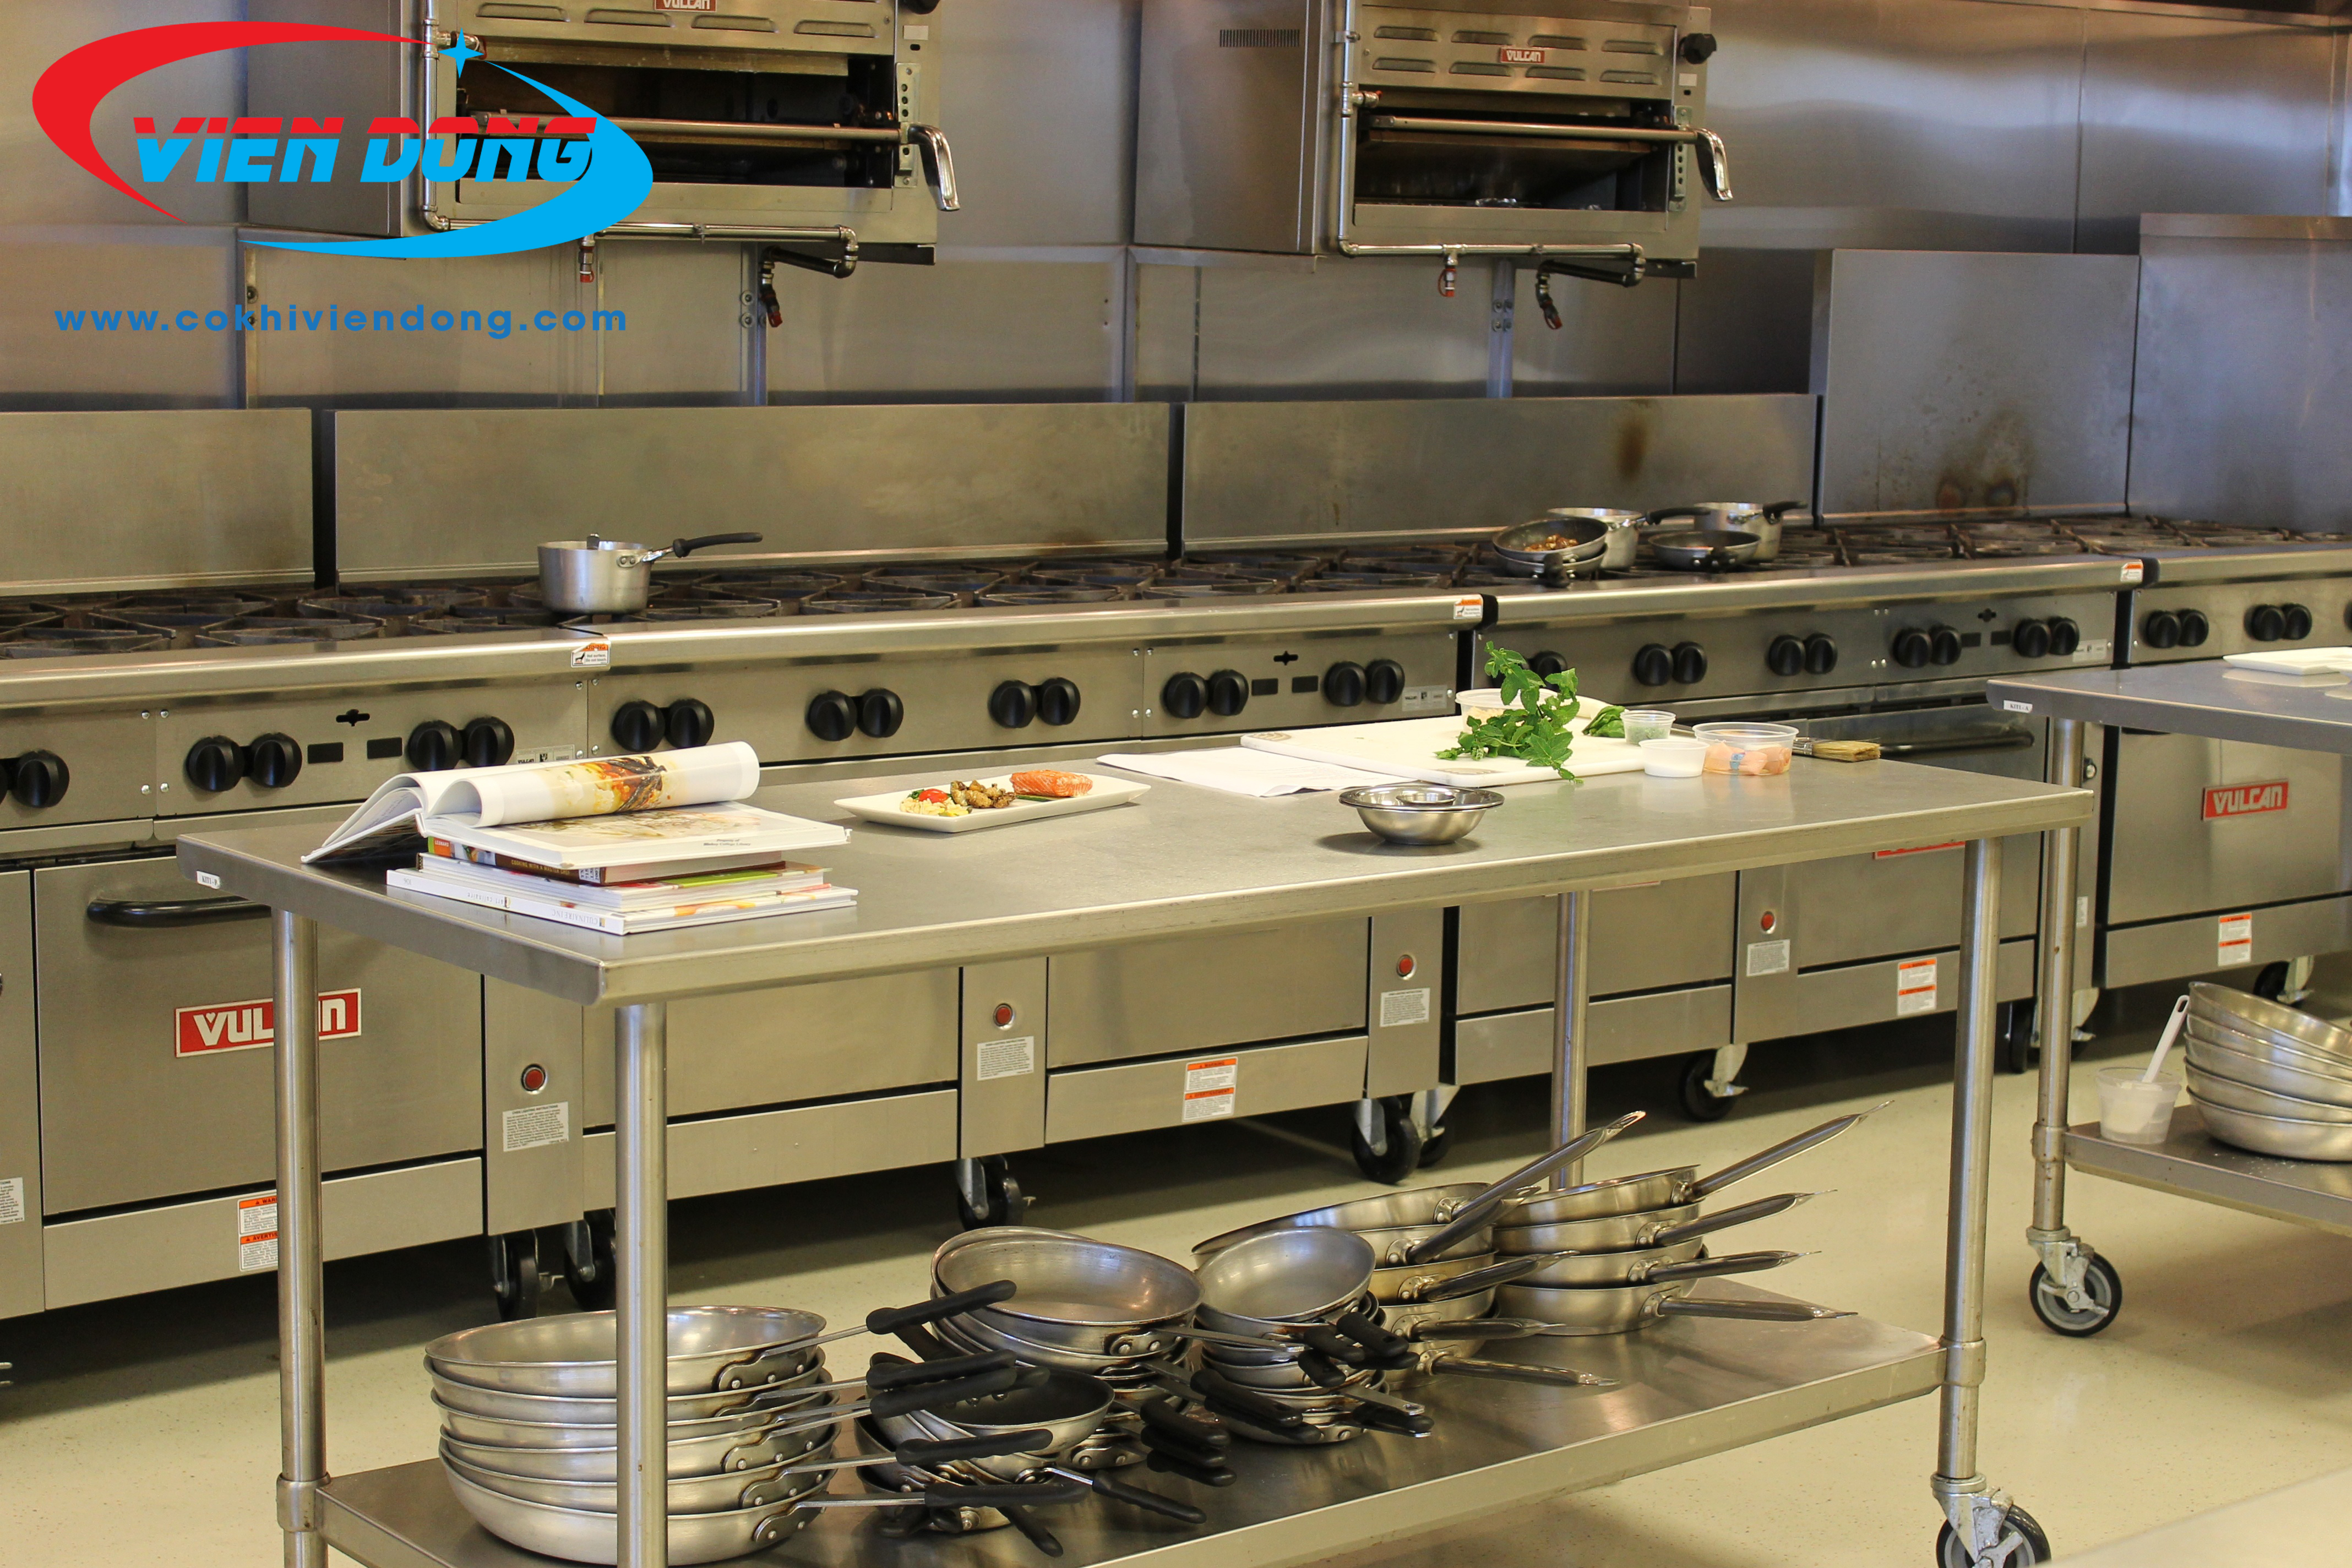 Tìm hiểu về các thiết bị cần có trong bếp canteen trường học, bệnh viện